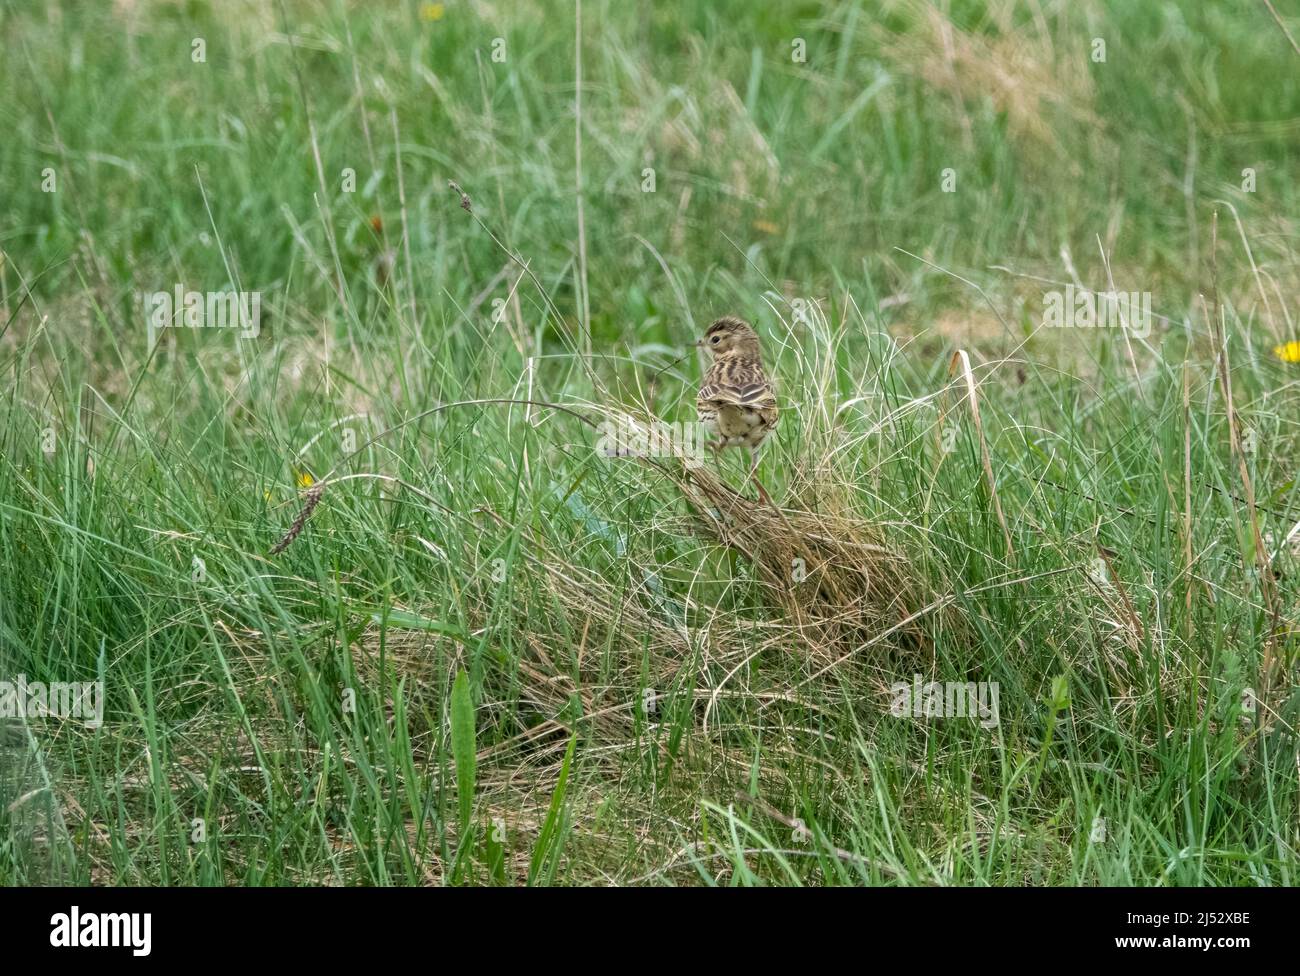 Eine Feldlerche (Alauda arvensis), die im Gras nach Nahrung sucht Stockfoto